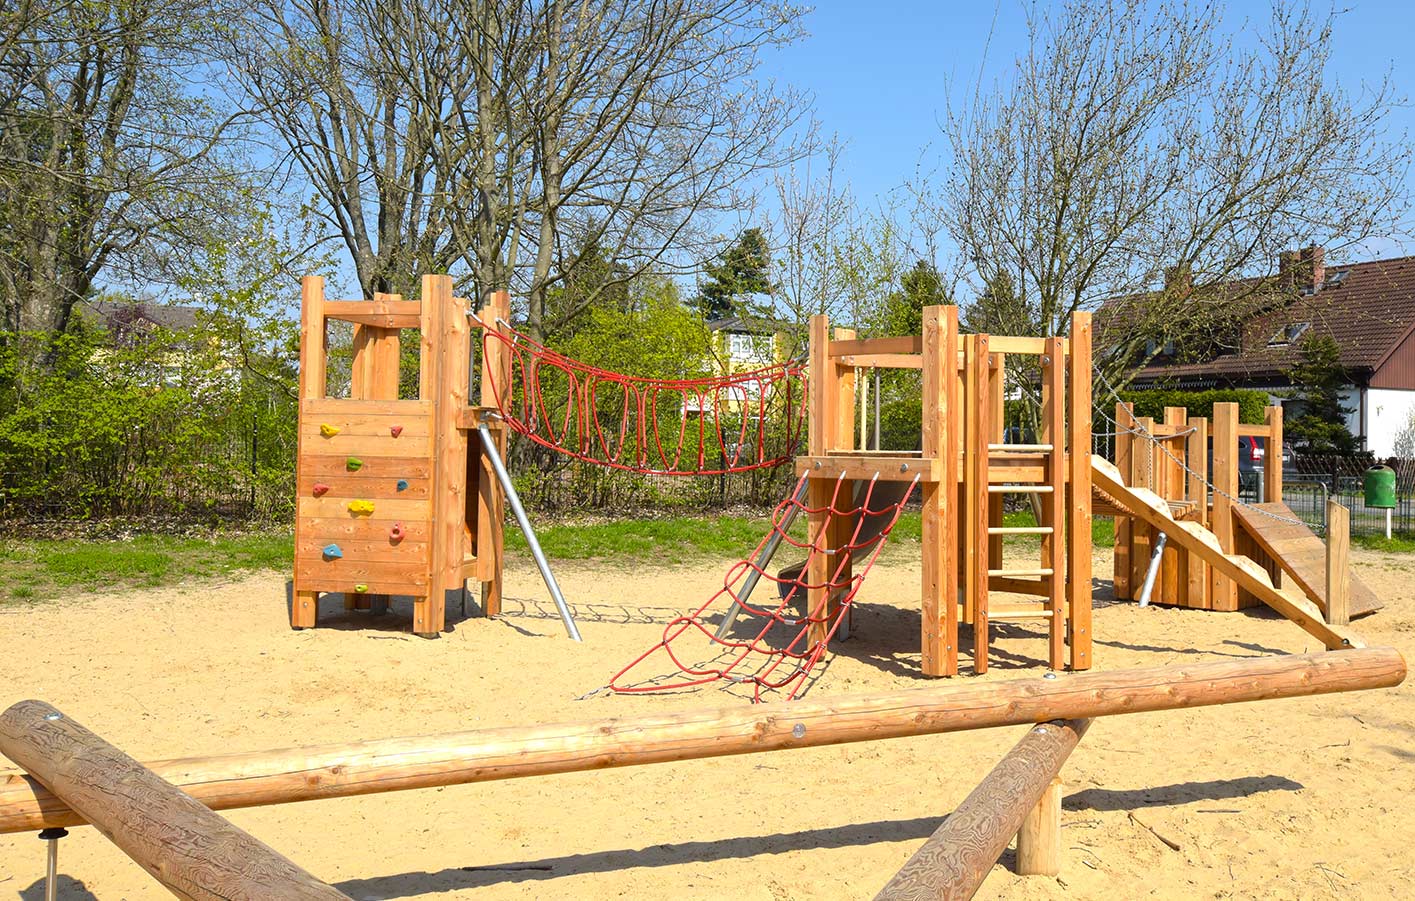 Spielanlage aus Holz auf einem öffentlichen Spielplatz